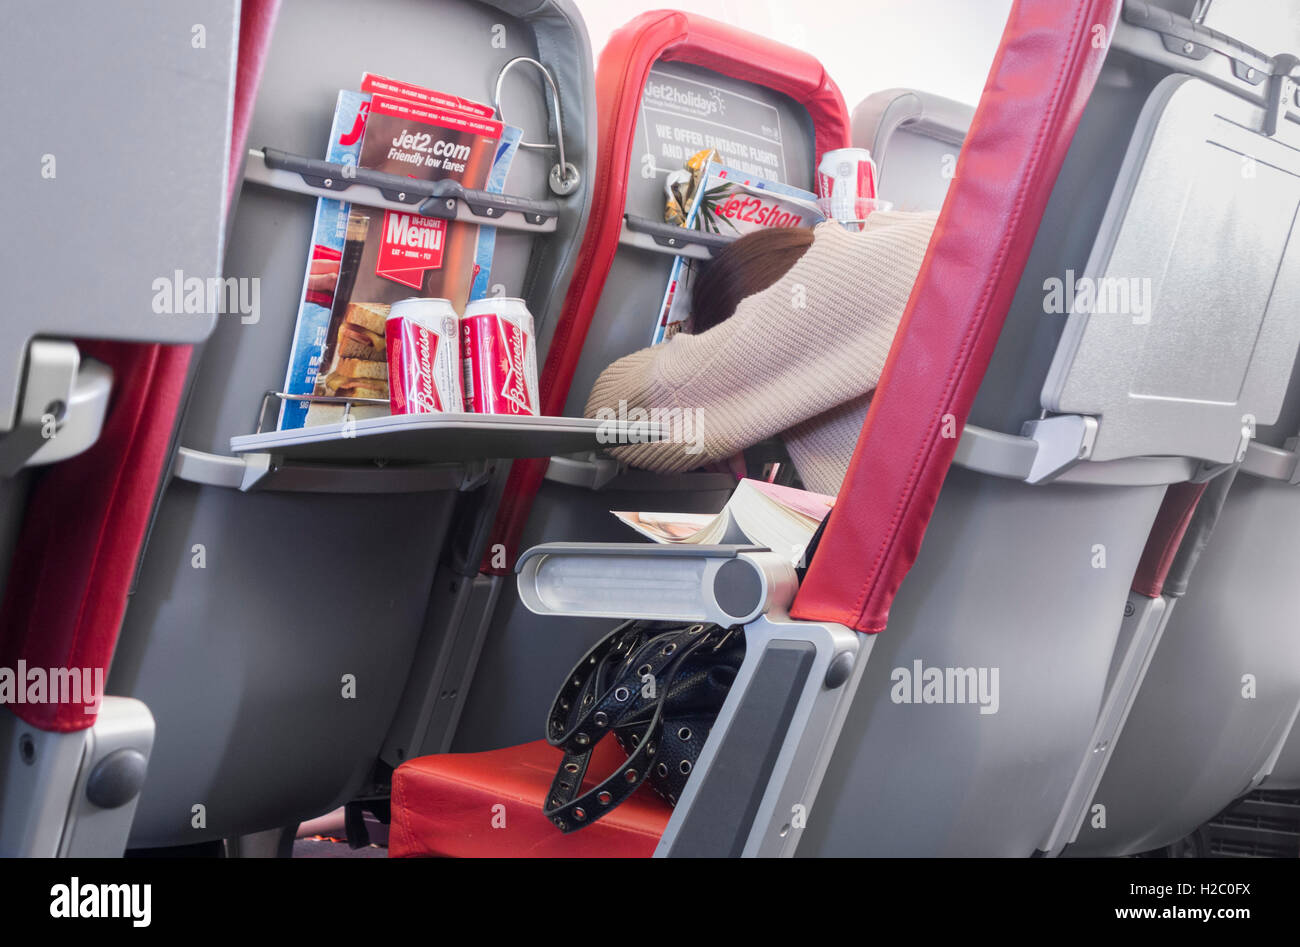 Beifahrerin schlafen auf Jet2.com Flug von Großbritannien nach Spanien mit Bierdosen auf Lebensmittel-Fach Stockfoto